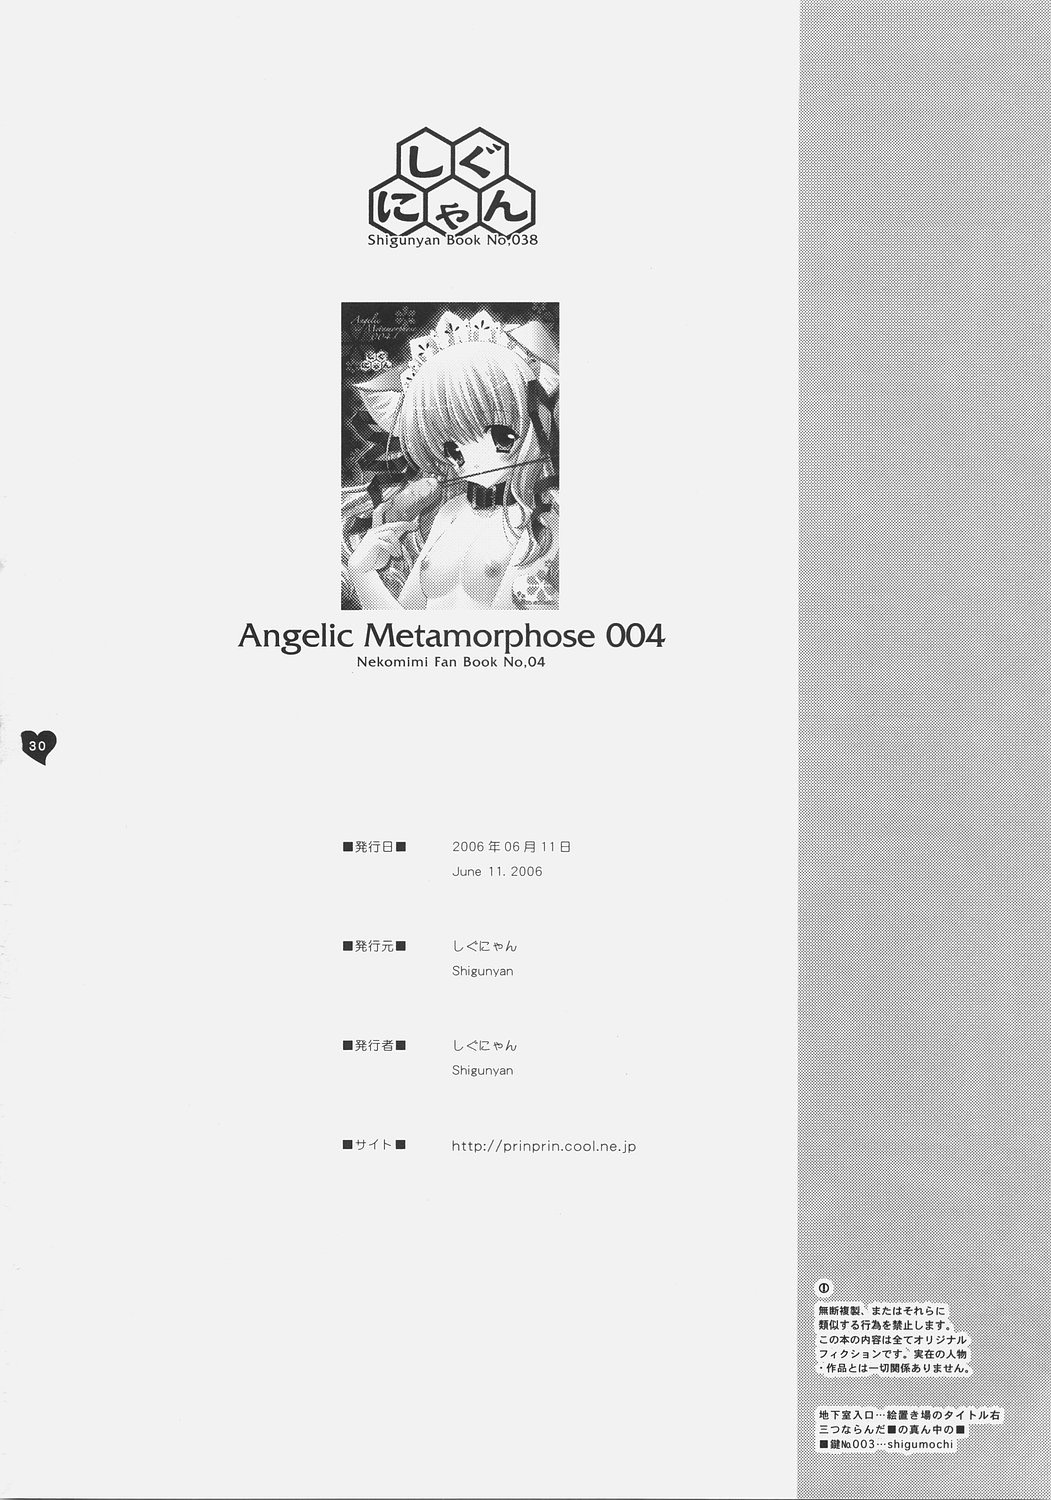 (コミコミ10) [しぐにゃん] Angelic Metamorphose 004